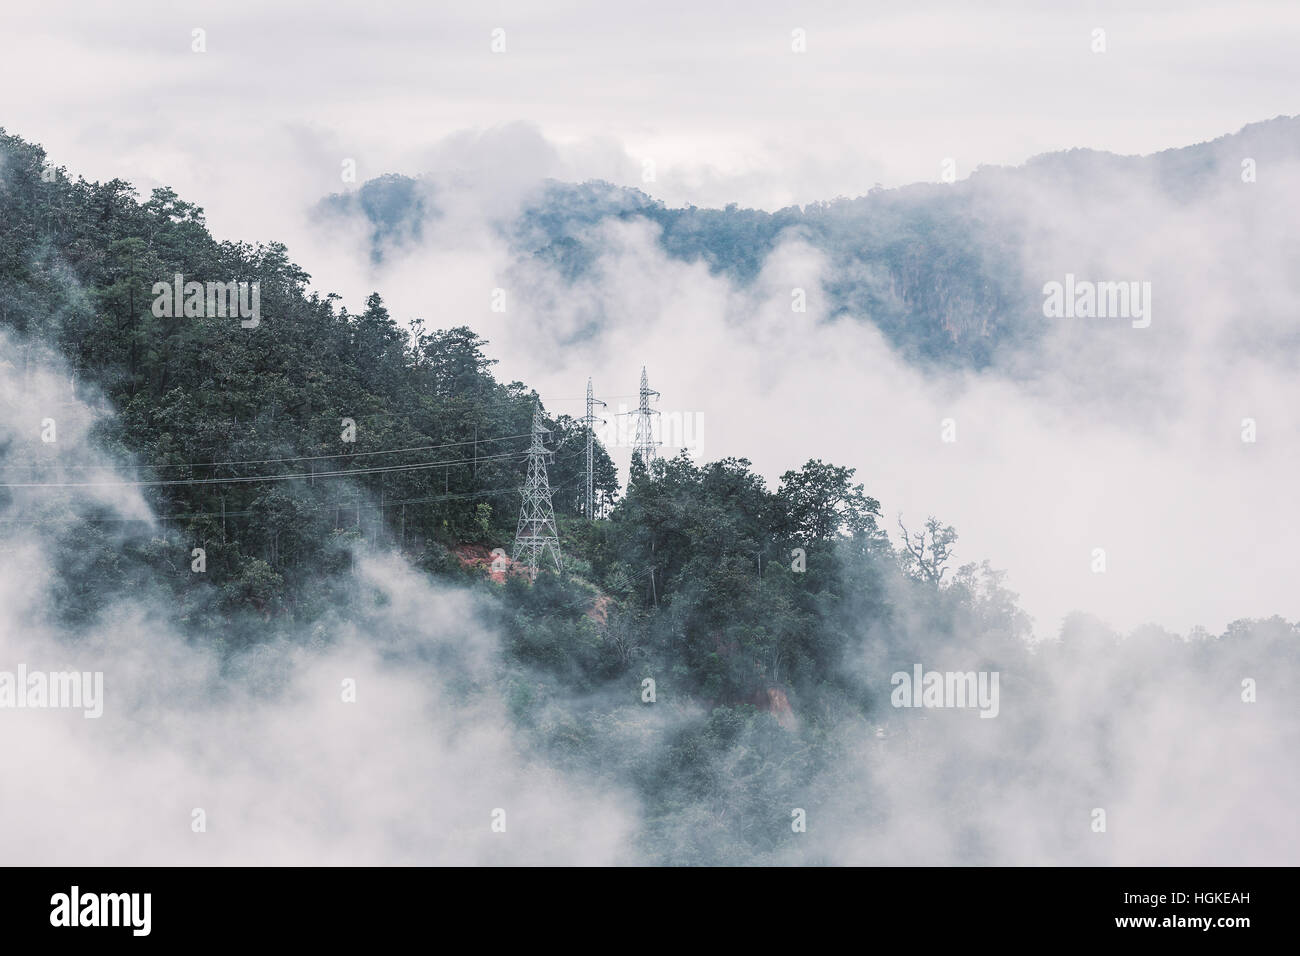 Scena di nebbia di foresta tropicale in montagna con torre di elettricità in tono dissaturata Foto Stock